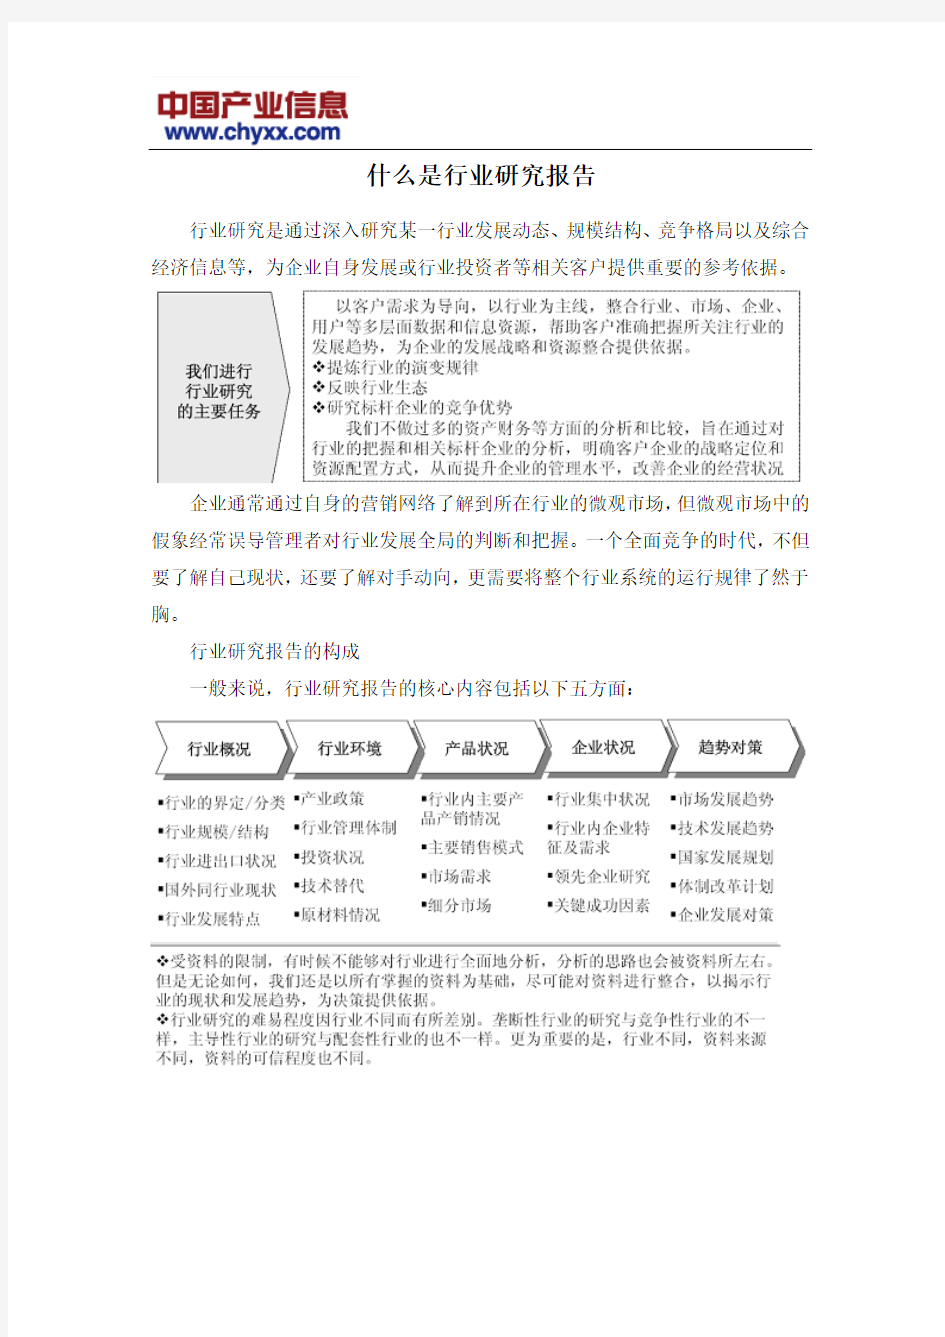 2015-2020年中国非标零件加工市场研究报告